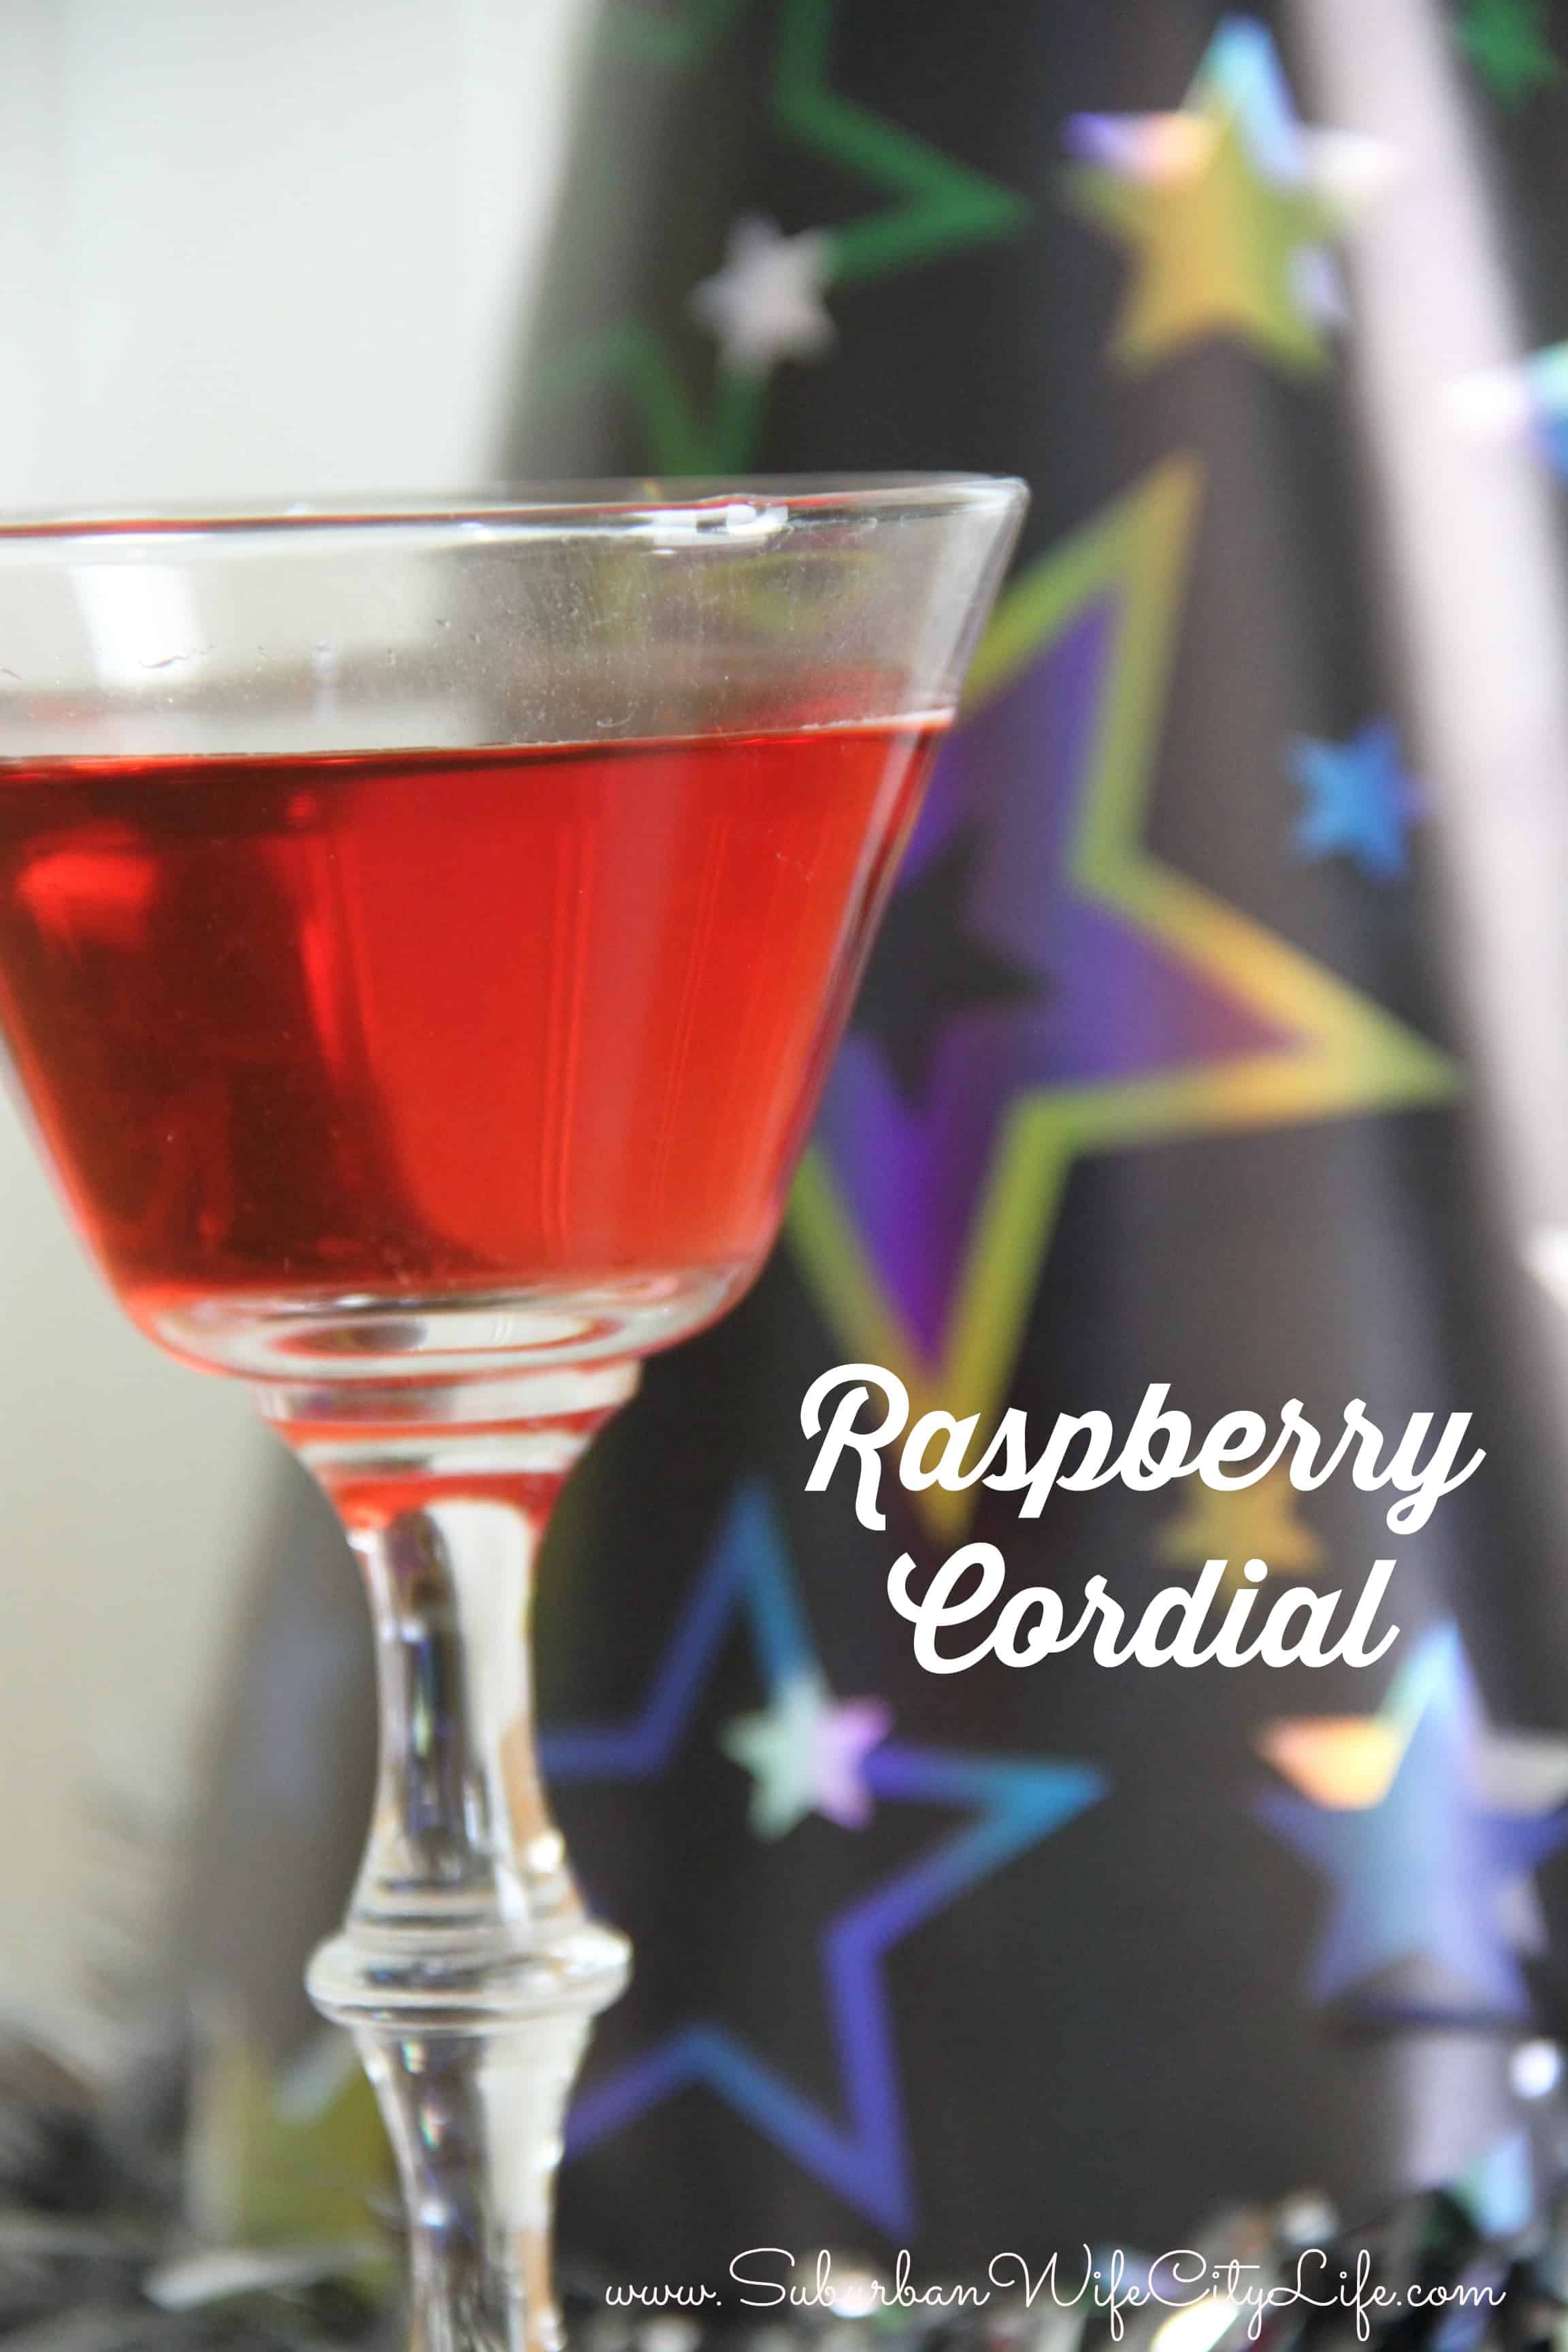 Raspberry Cordial